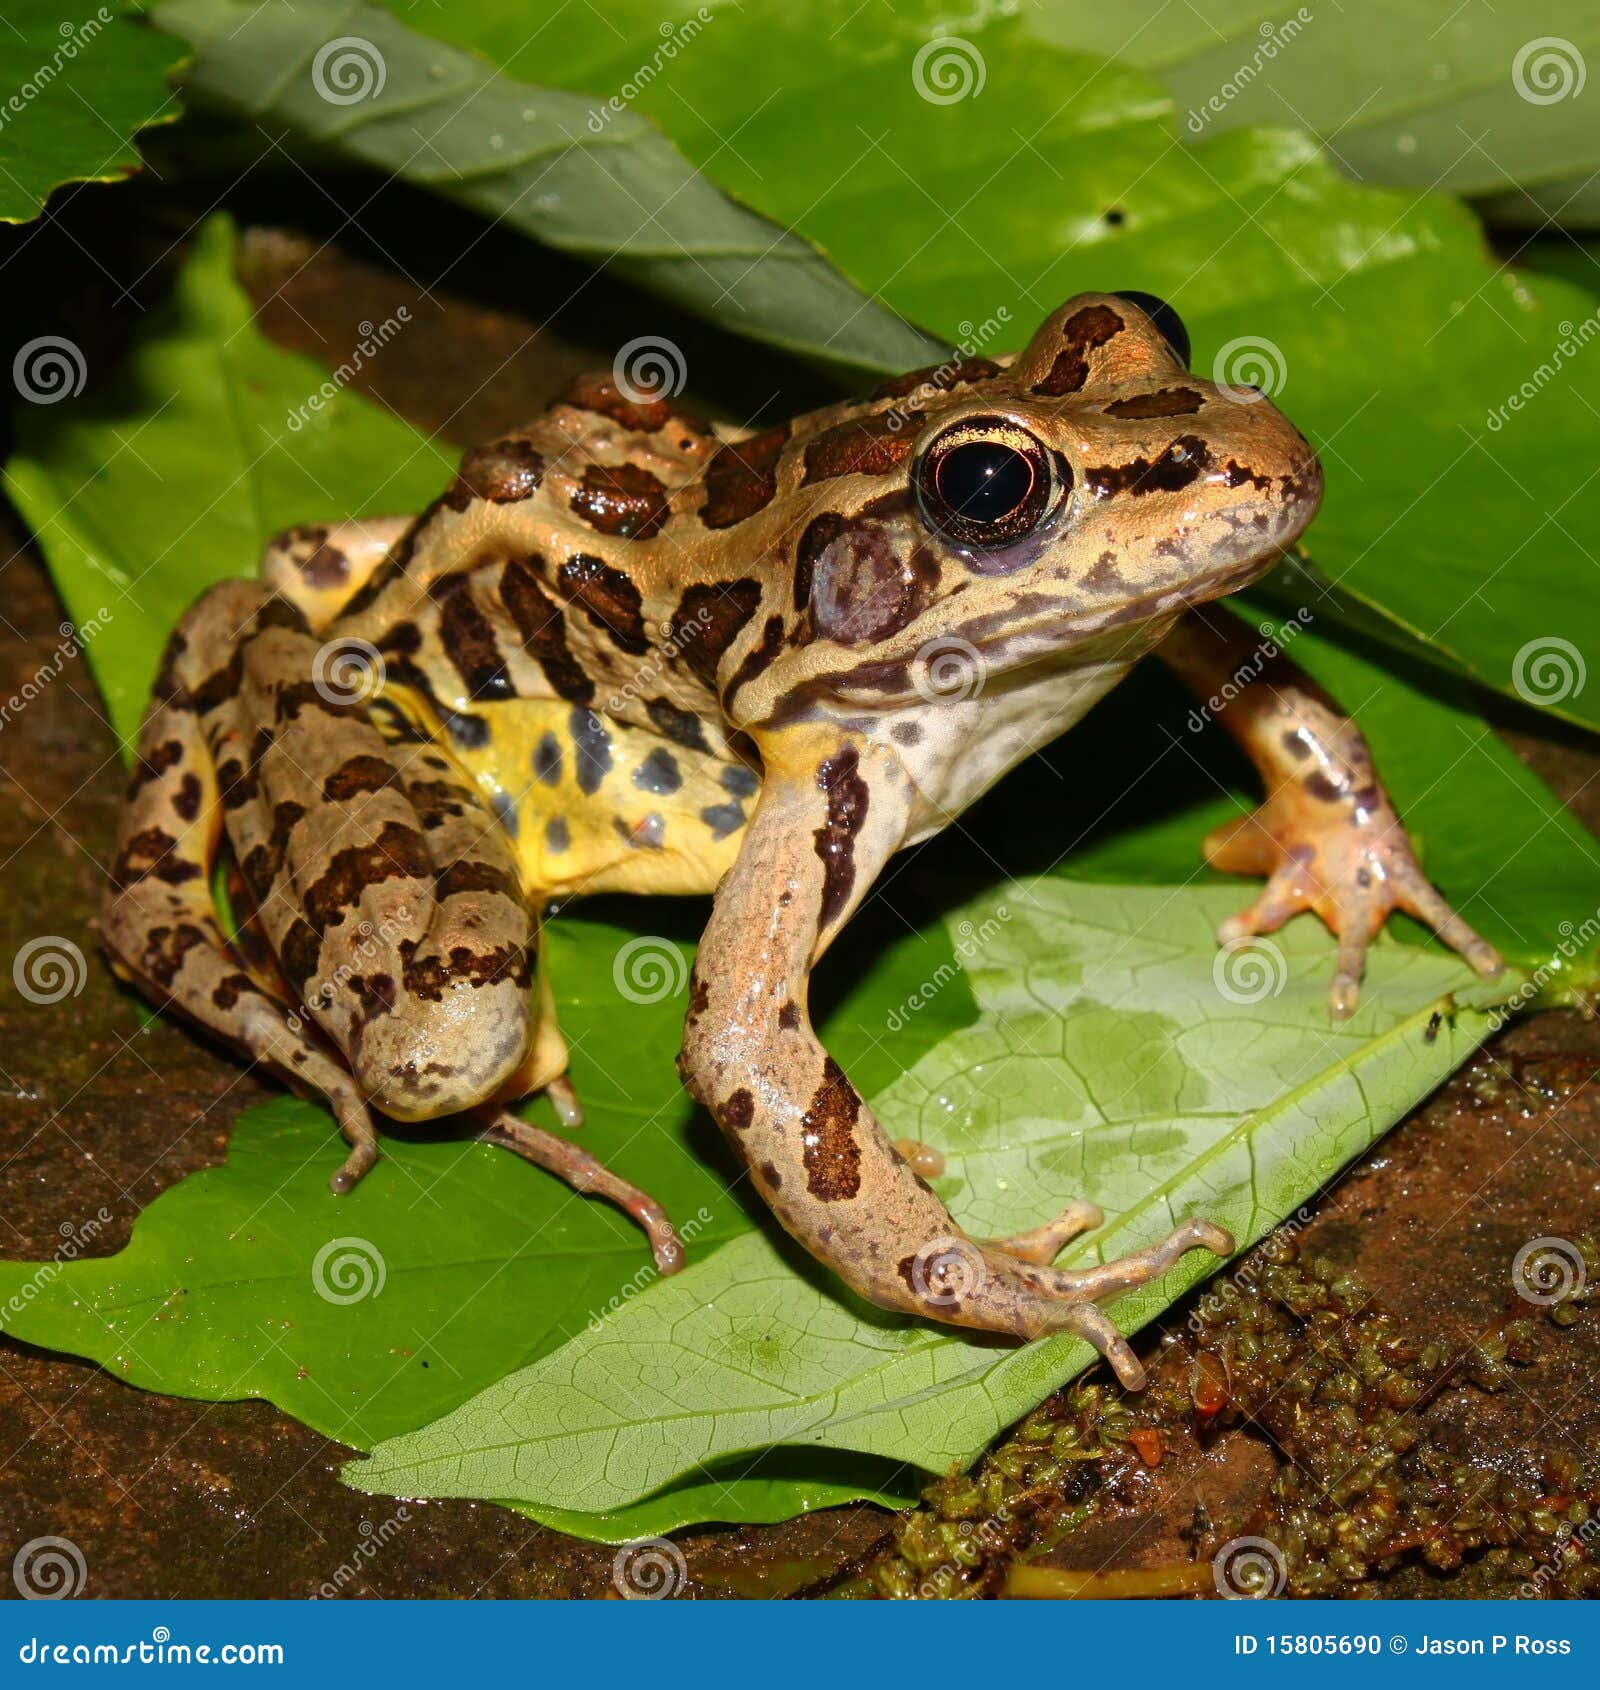 pickerel frog (rana palustris)